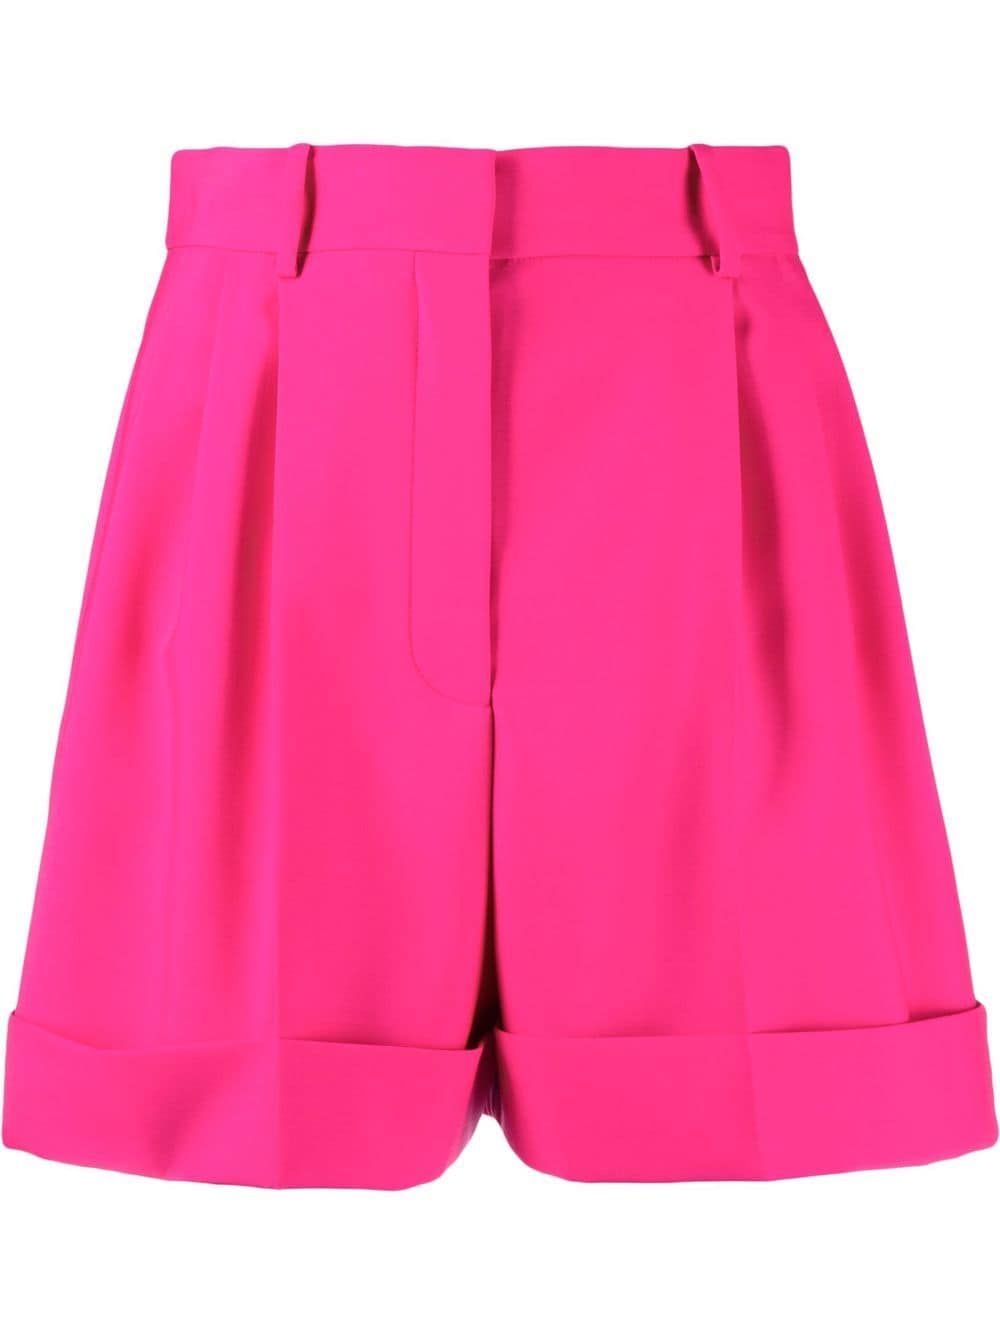 Alexander McQueen tailored wool shorts - Pink